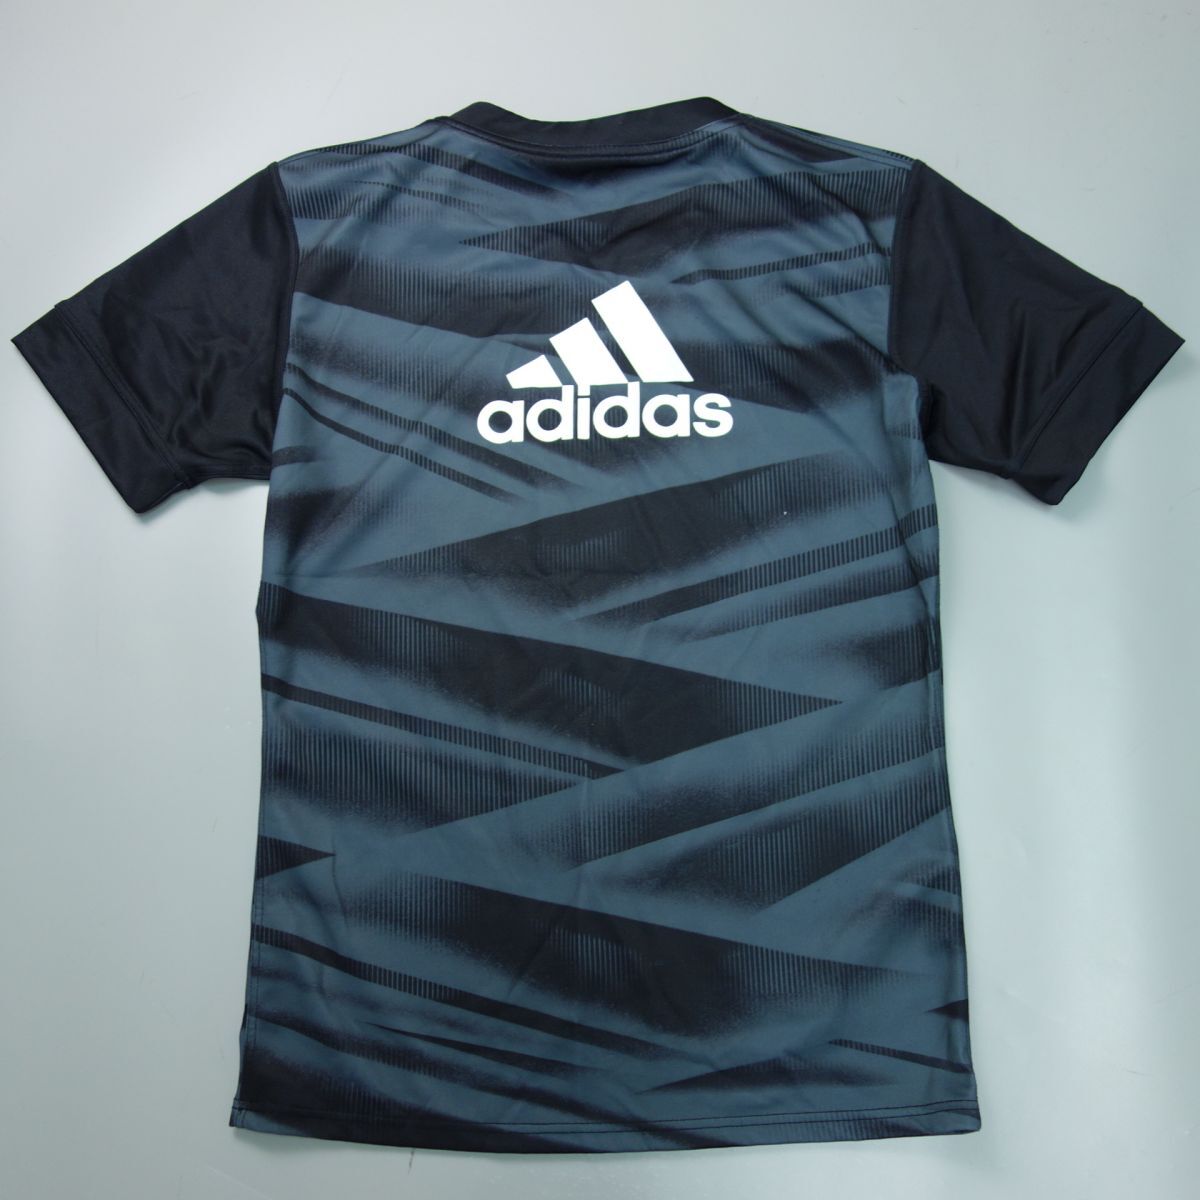  Ricoh черный Ram z Tokyo Adidas производства игрок предметы снабжения форма джерси рубашка шорты регби to шкив g